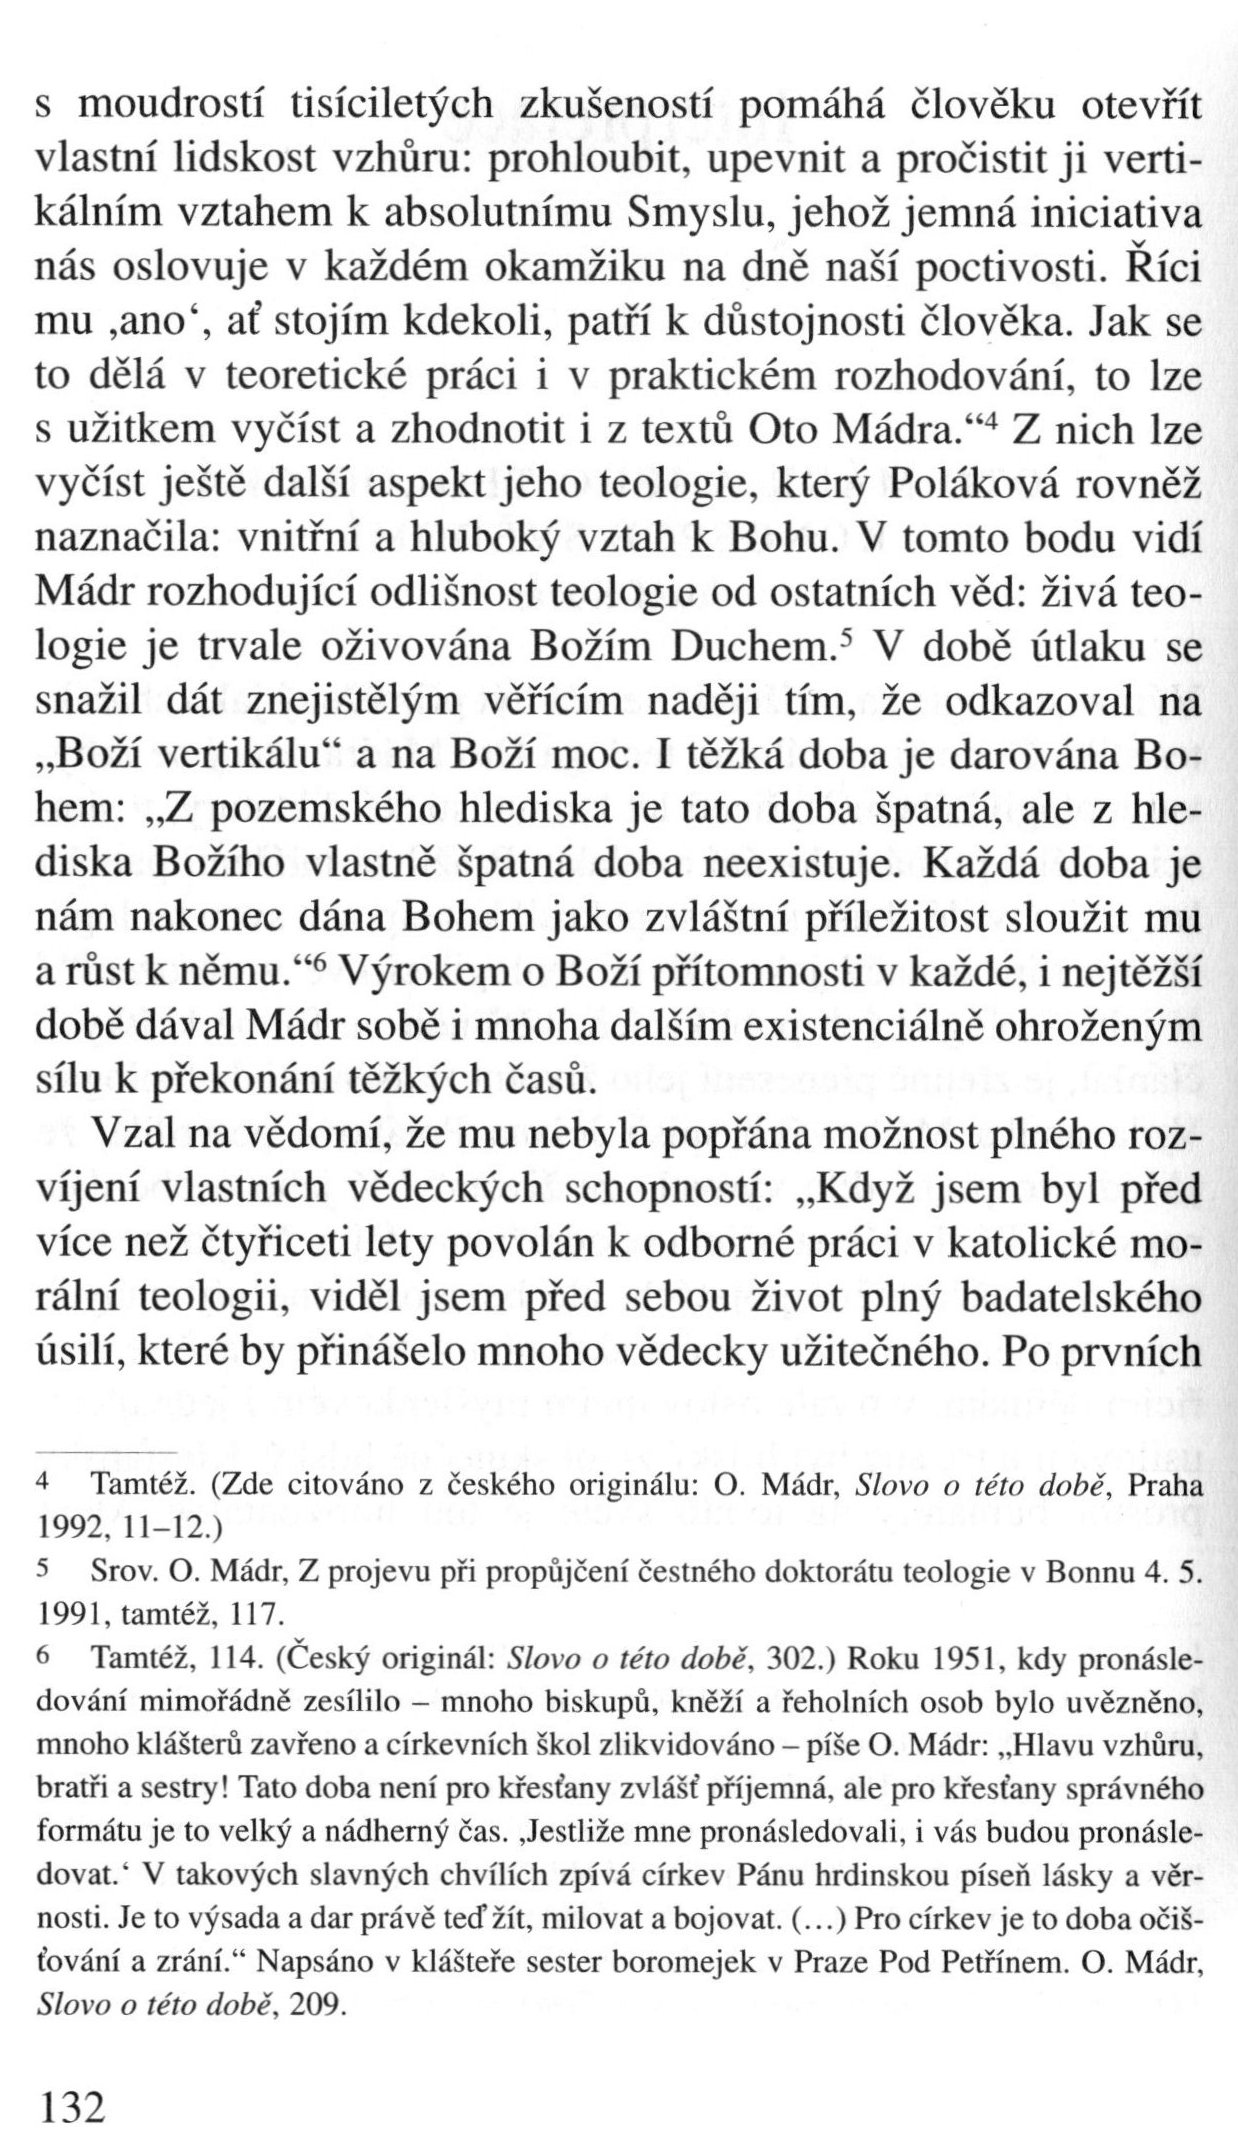 V zápasech za Boží věc / INTERPRETACE / Oto Mádr a jeho teologická koncepce svědomí (Jozef Kuzár) / strana 132